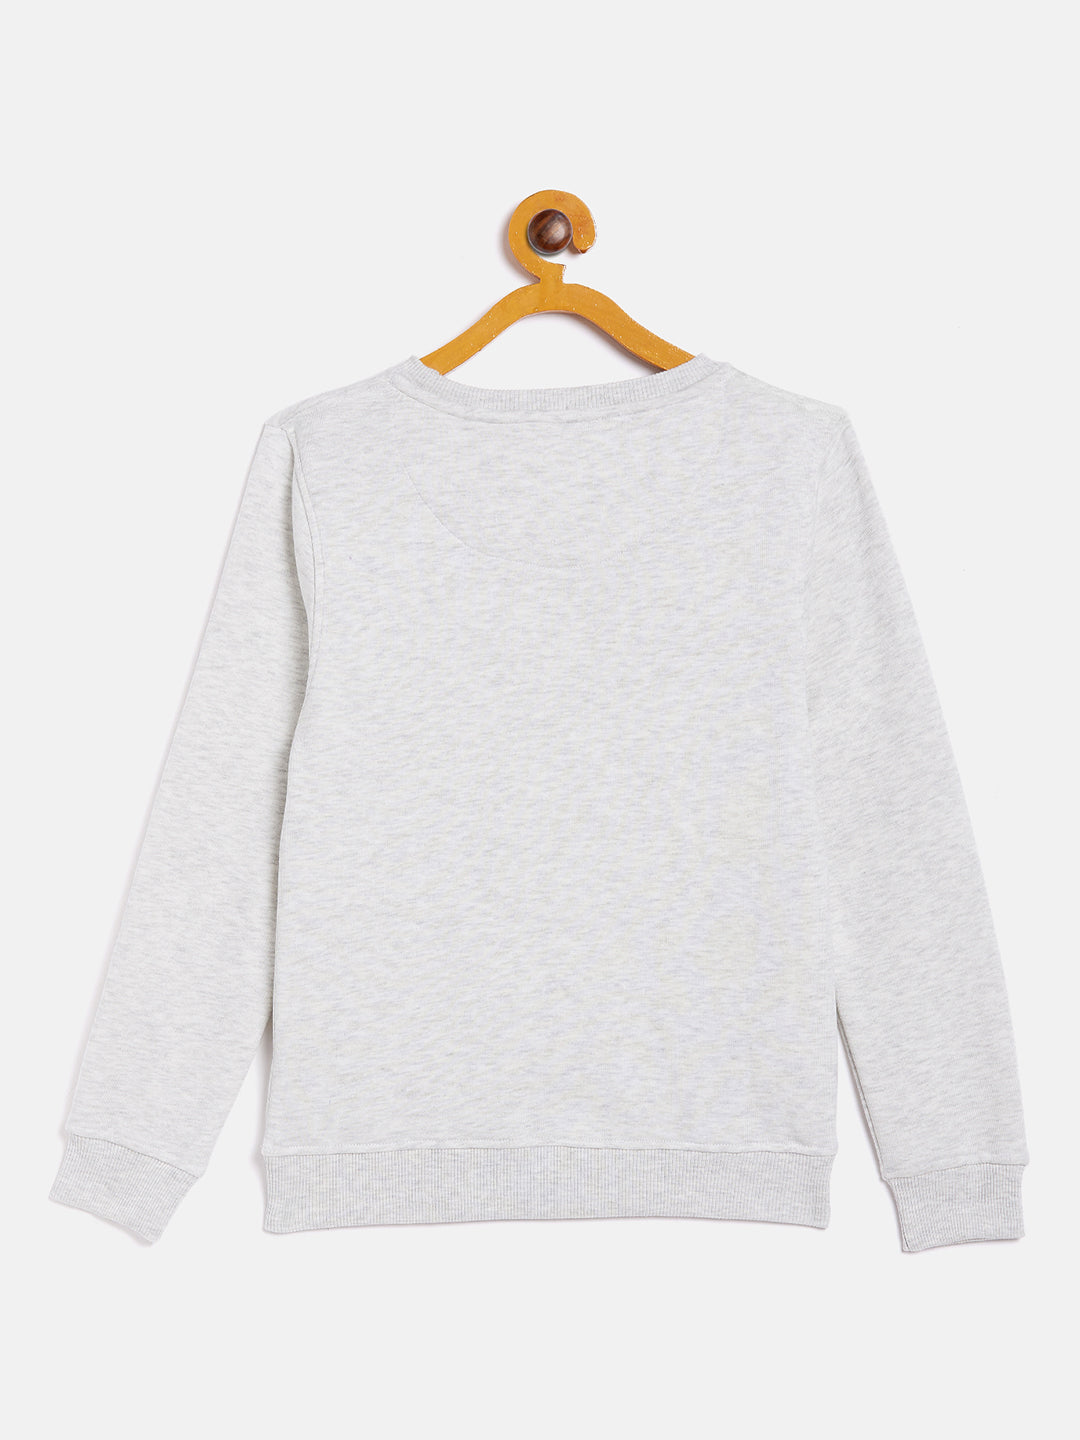 Grey Round Neck Sweatshirt - Girls Sweatshirts